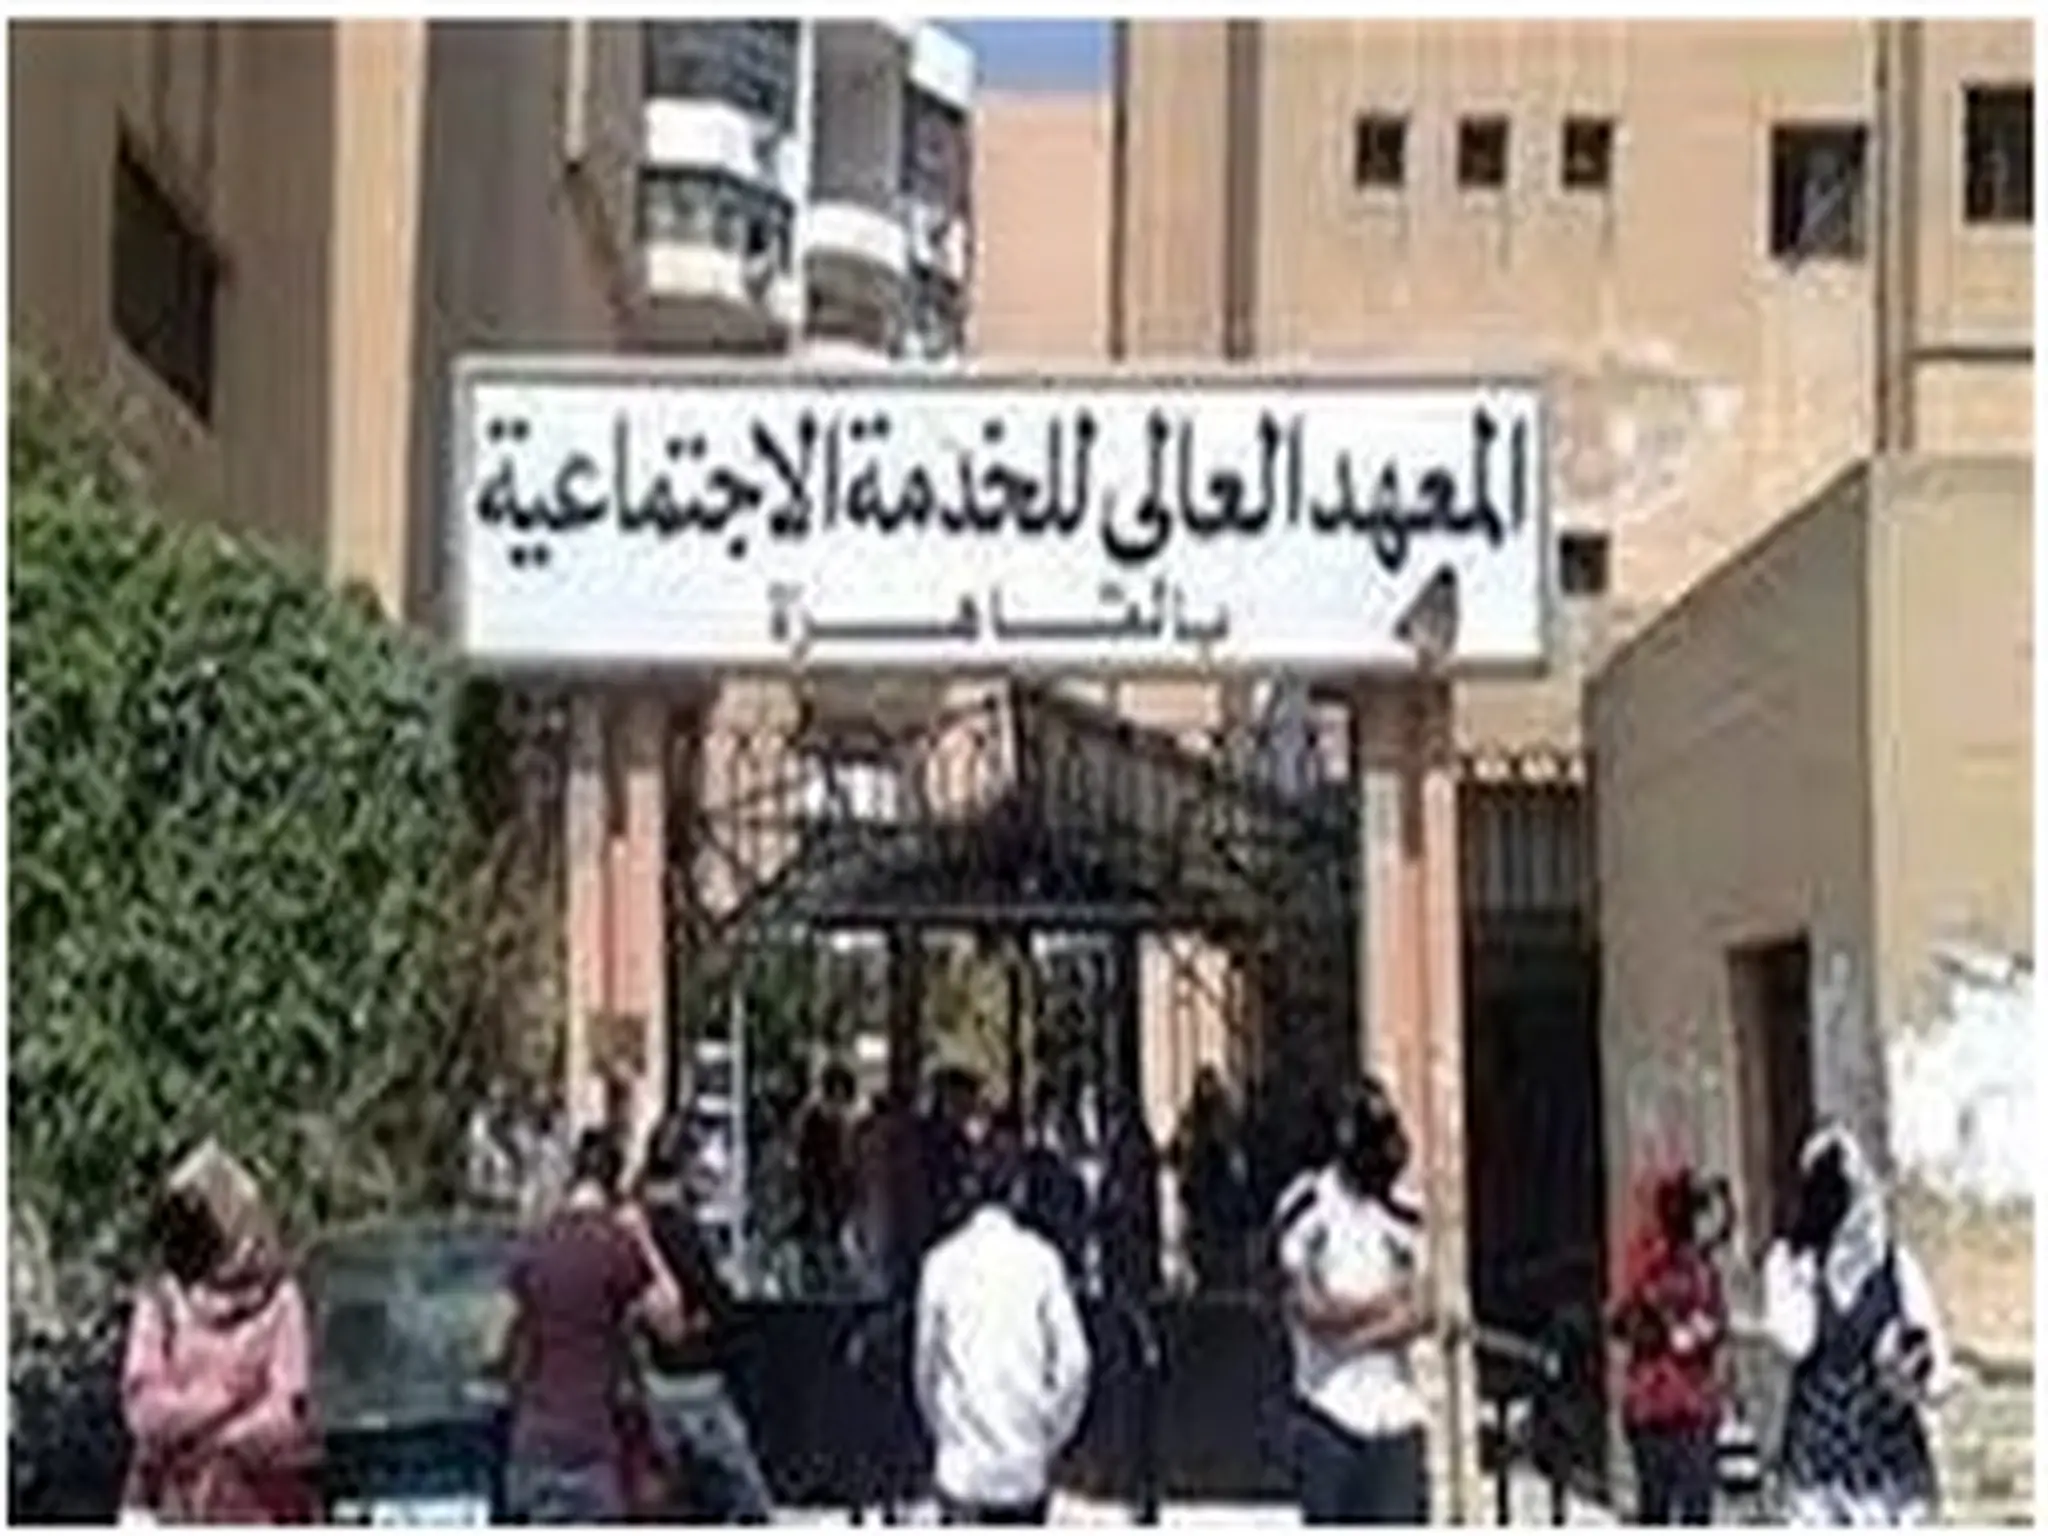  أسماء وأماكن معاهد الخدمة الاجتماعية المعتمدة فى مصر